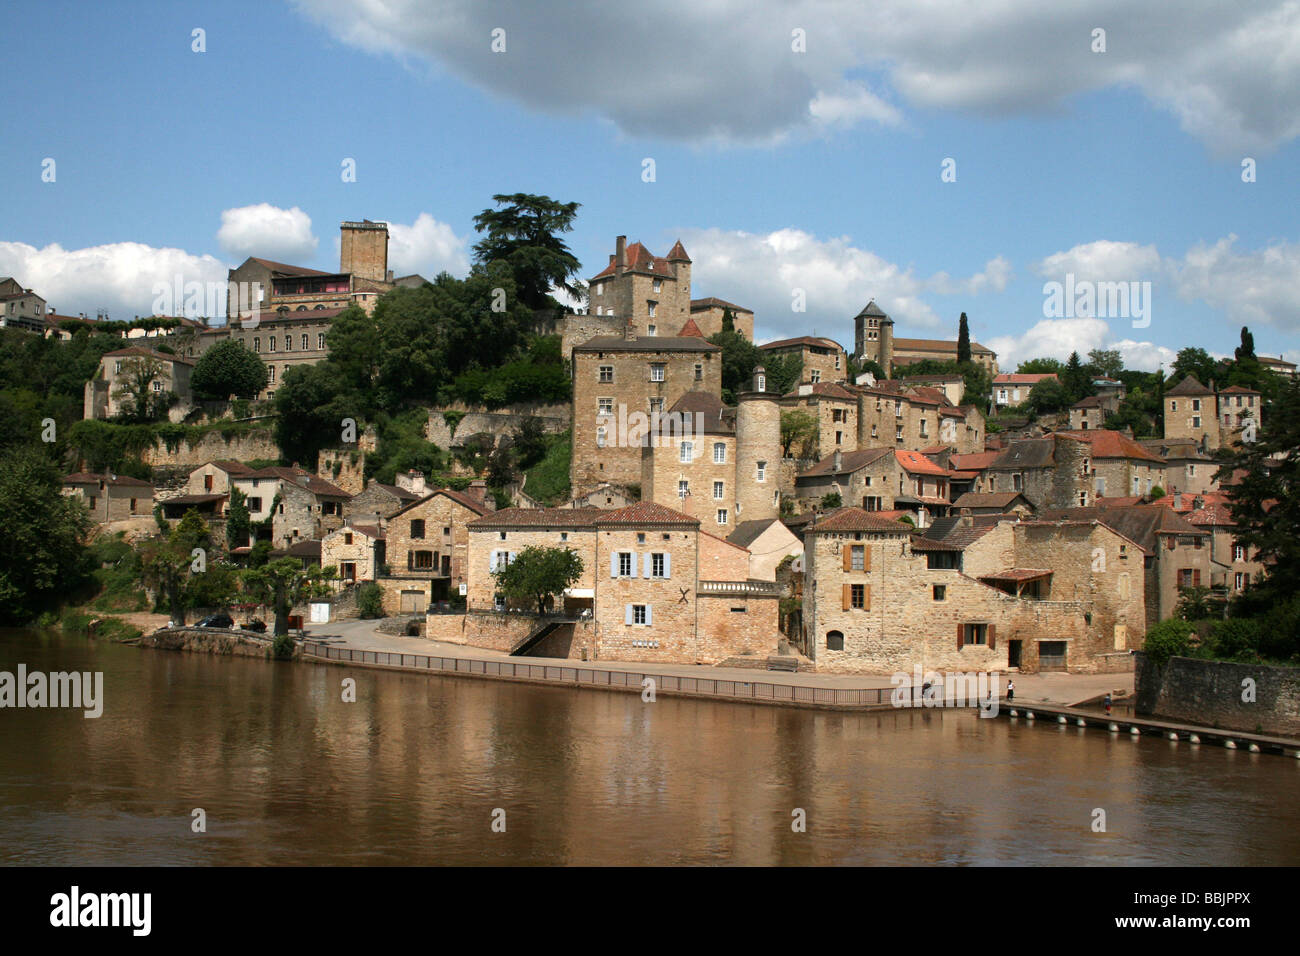 Puy L'Eveque ville médiévale au bord de la rivière Lot, France Banque D'Images